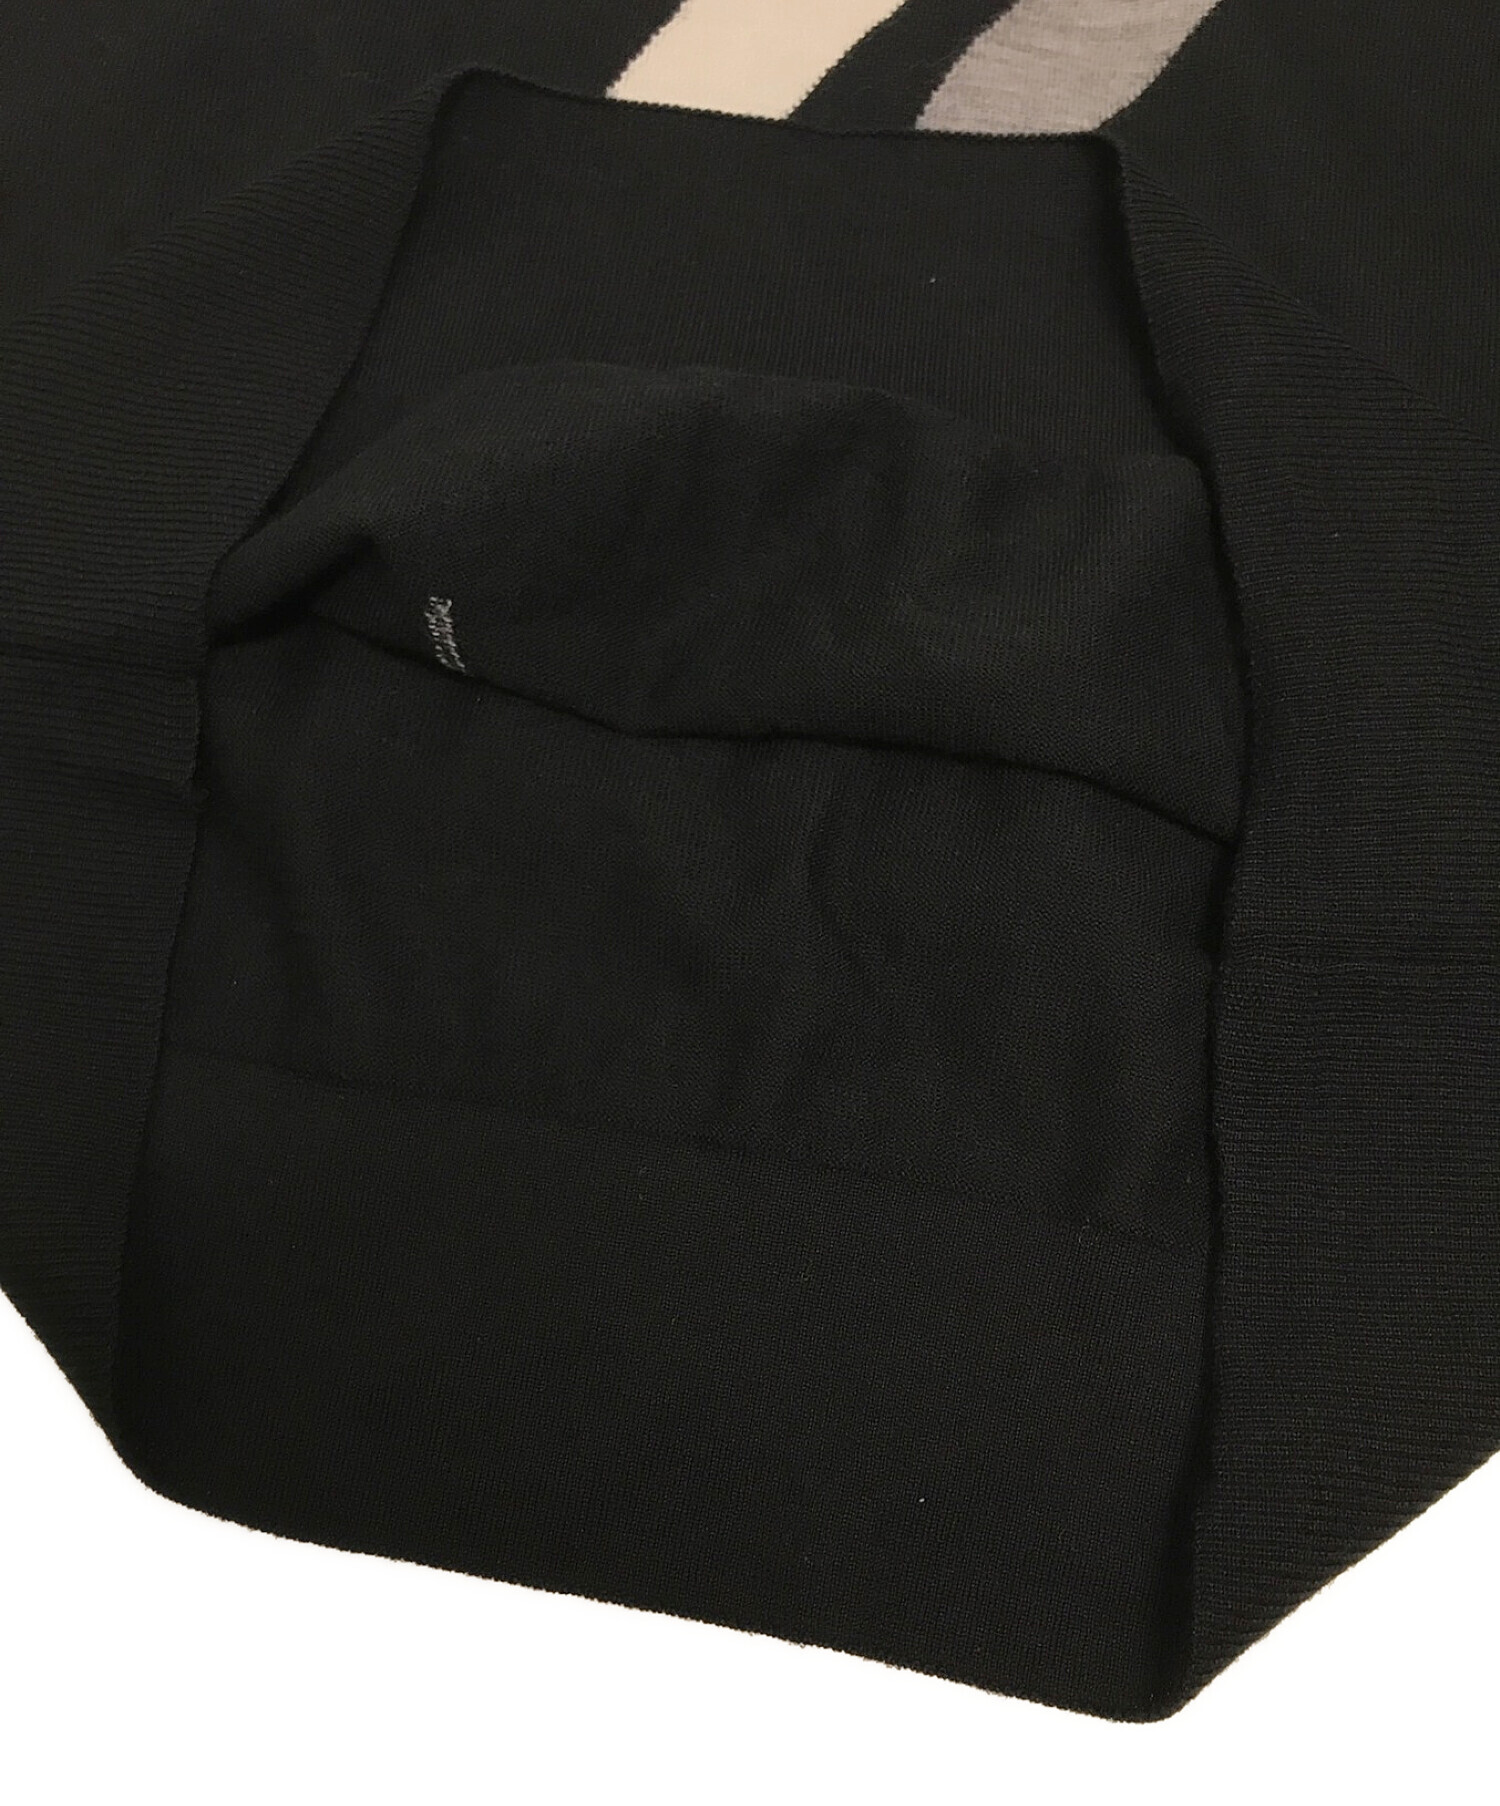 NEIL BARRETT (ニールバレット) ボルトニットセーター ブラック サイズ:S